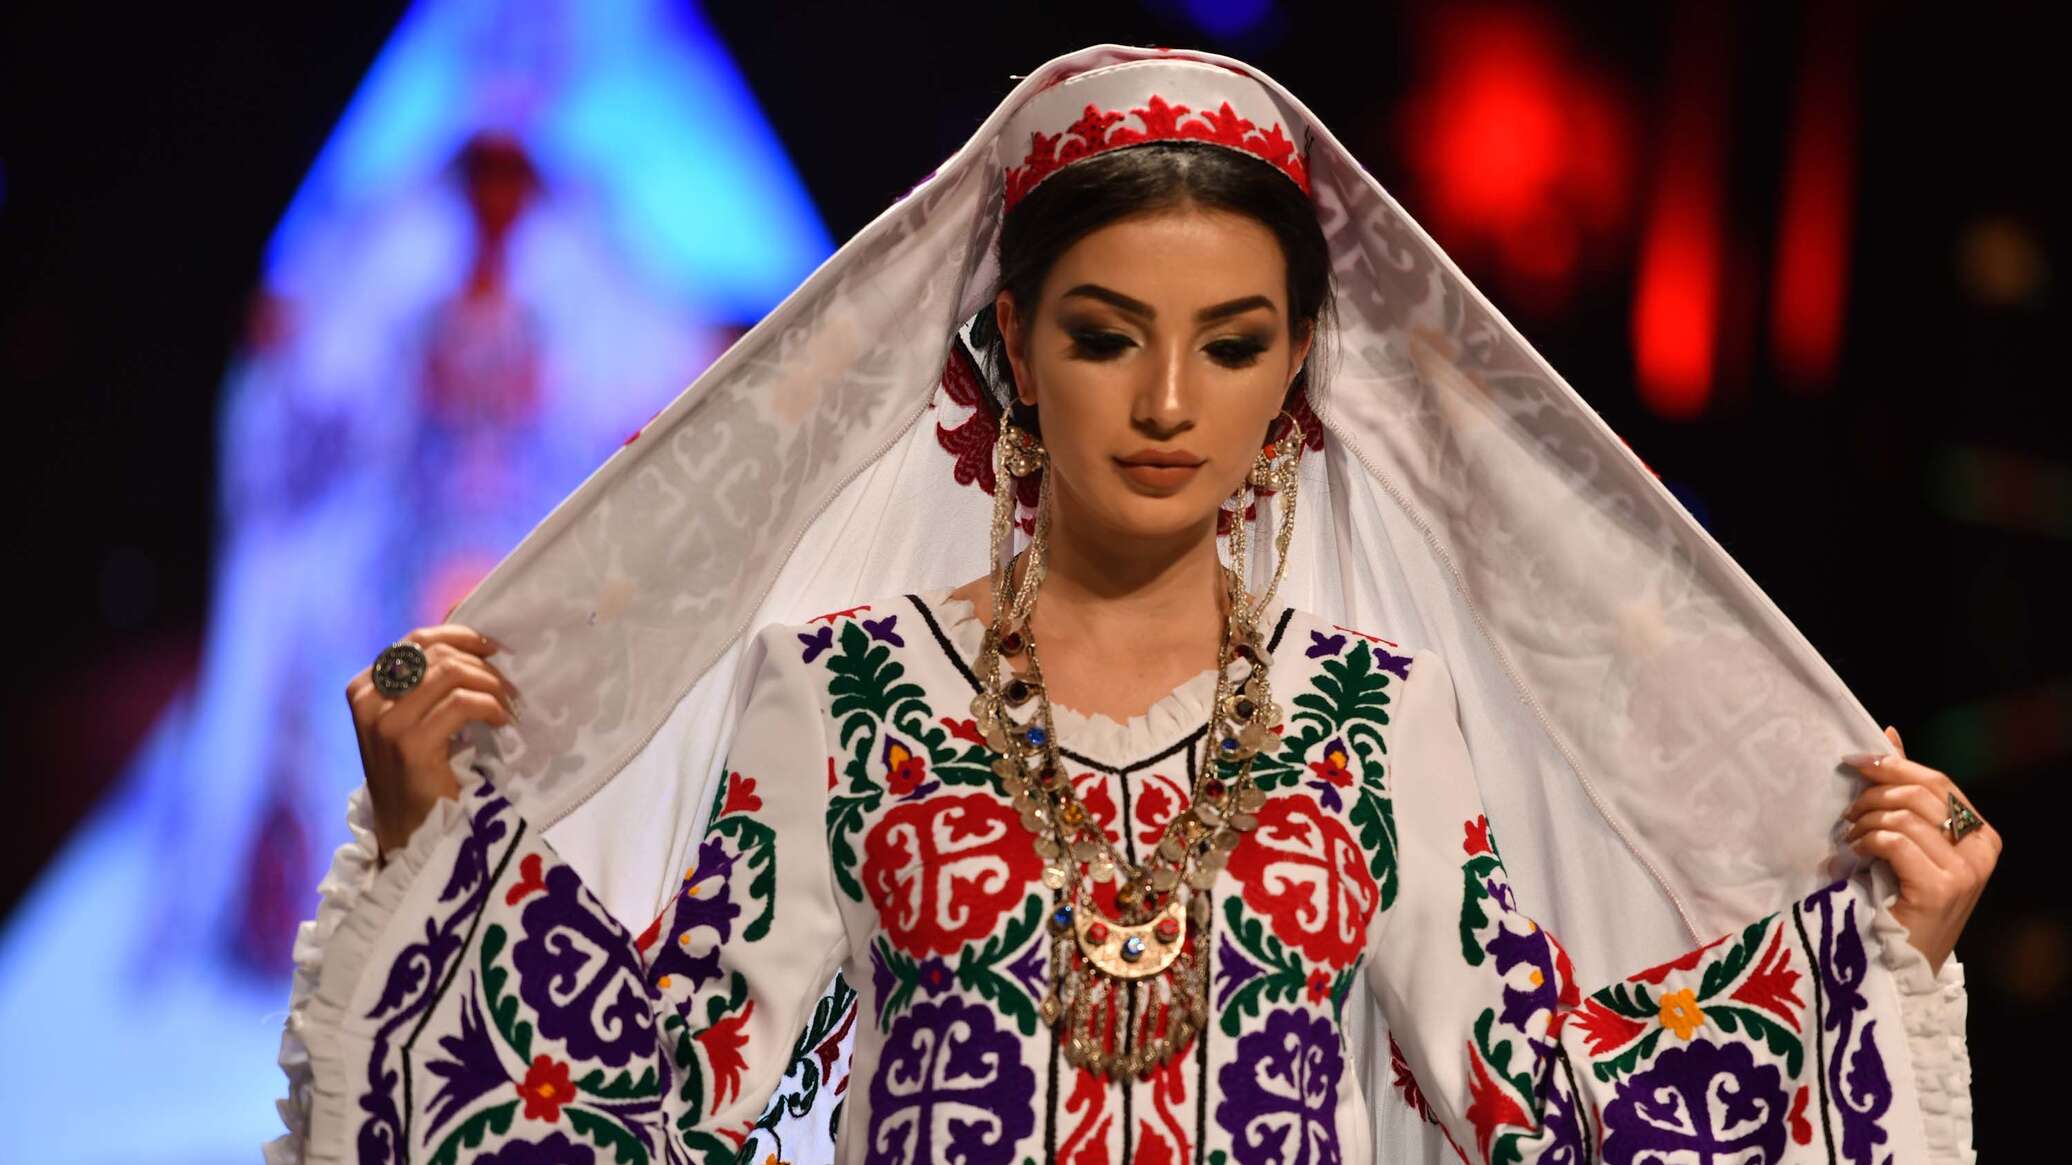 Национальные платья в таджикистане